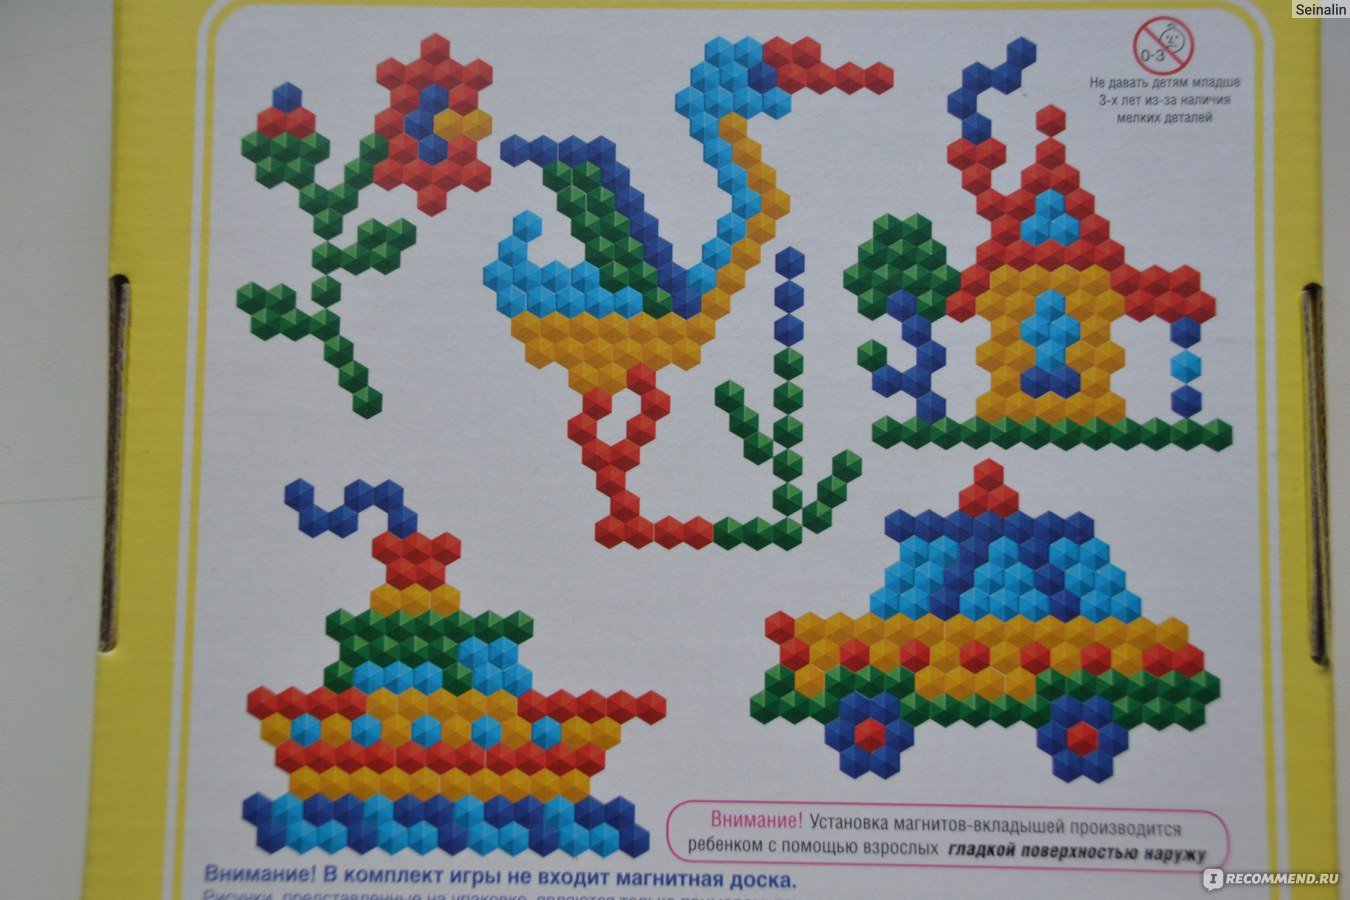 Схема мозаики для детей. Детская мозаика Стеллар схемы. Схемы для мозаики для детей. Фигурки из мозаики для детей. Схемы для мозаики детской шестигранной.